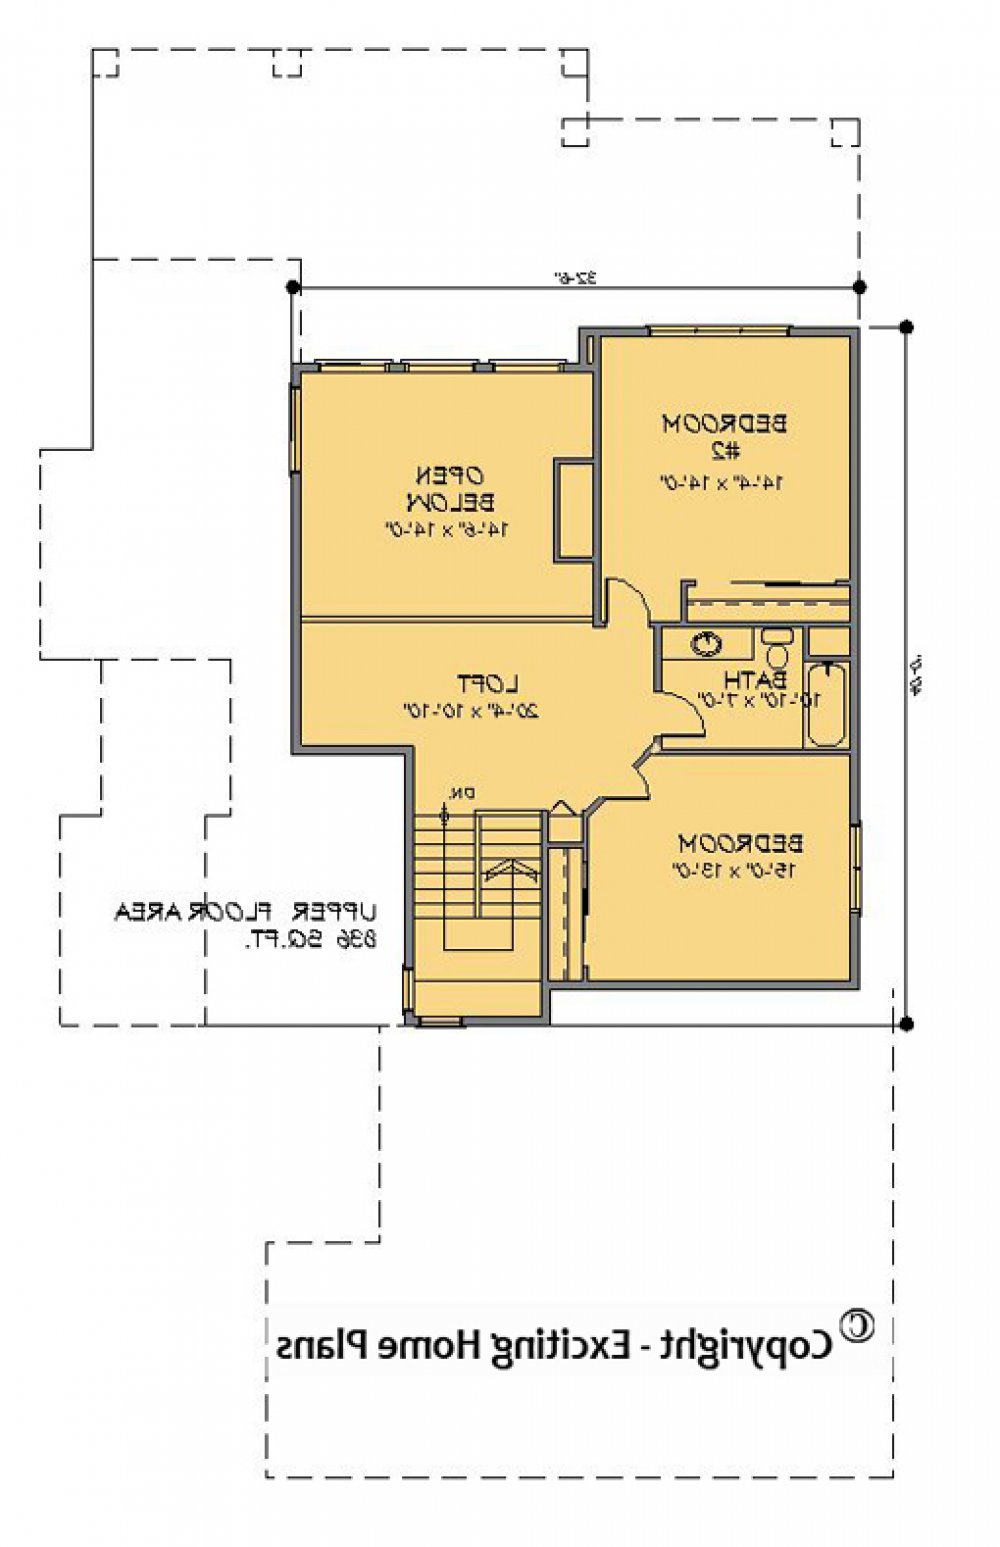 House Plan E1166-10 Upper Floor Plan REVERSE